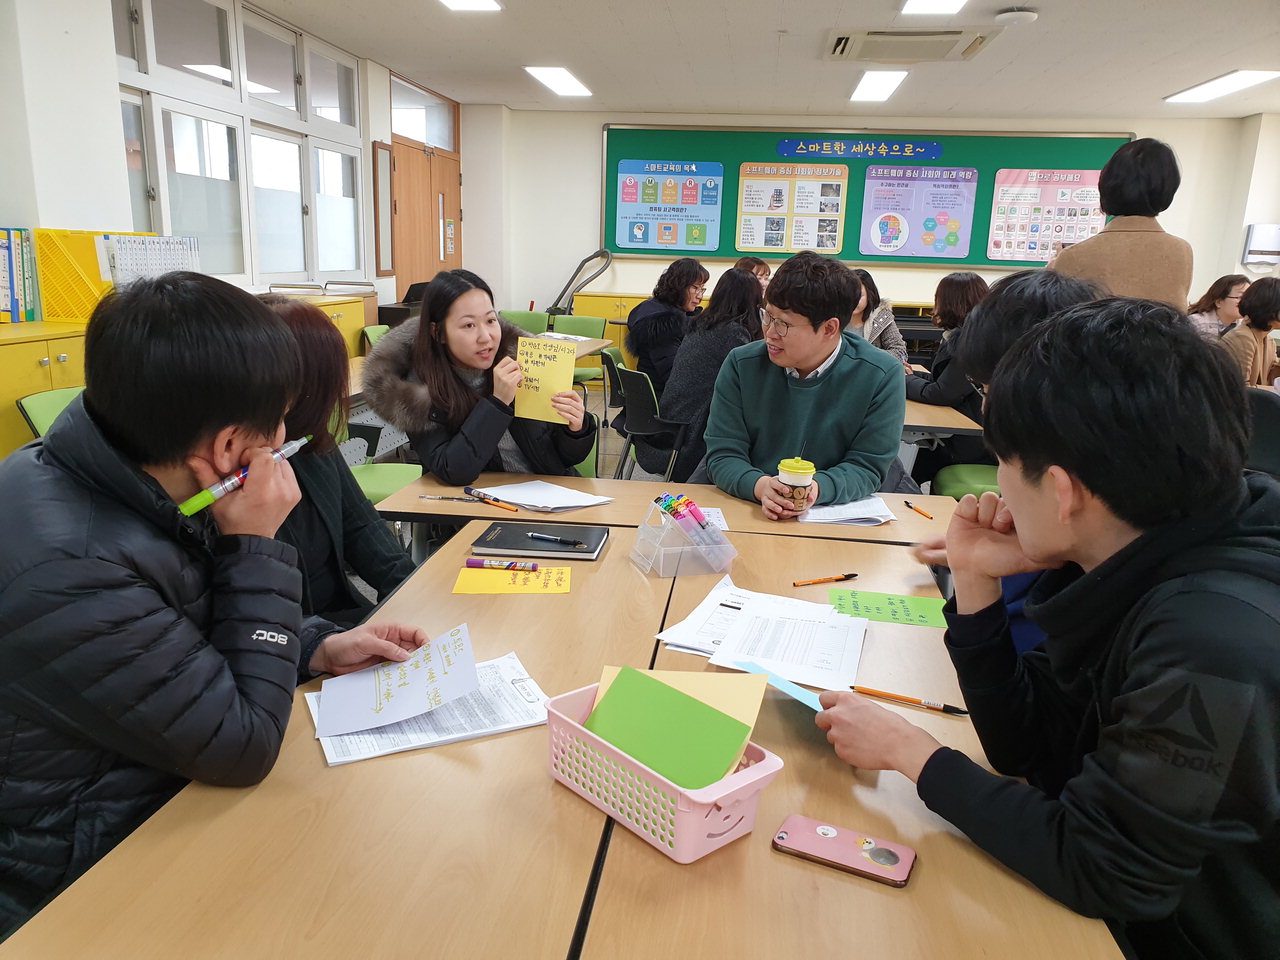 장야초등학교는 19일 새 학기를 맞아 새로운 전입 교원과 함께 교육과정 워크숍을 진행했다. / 장야